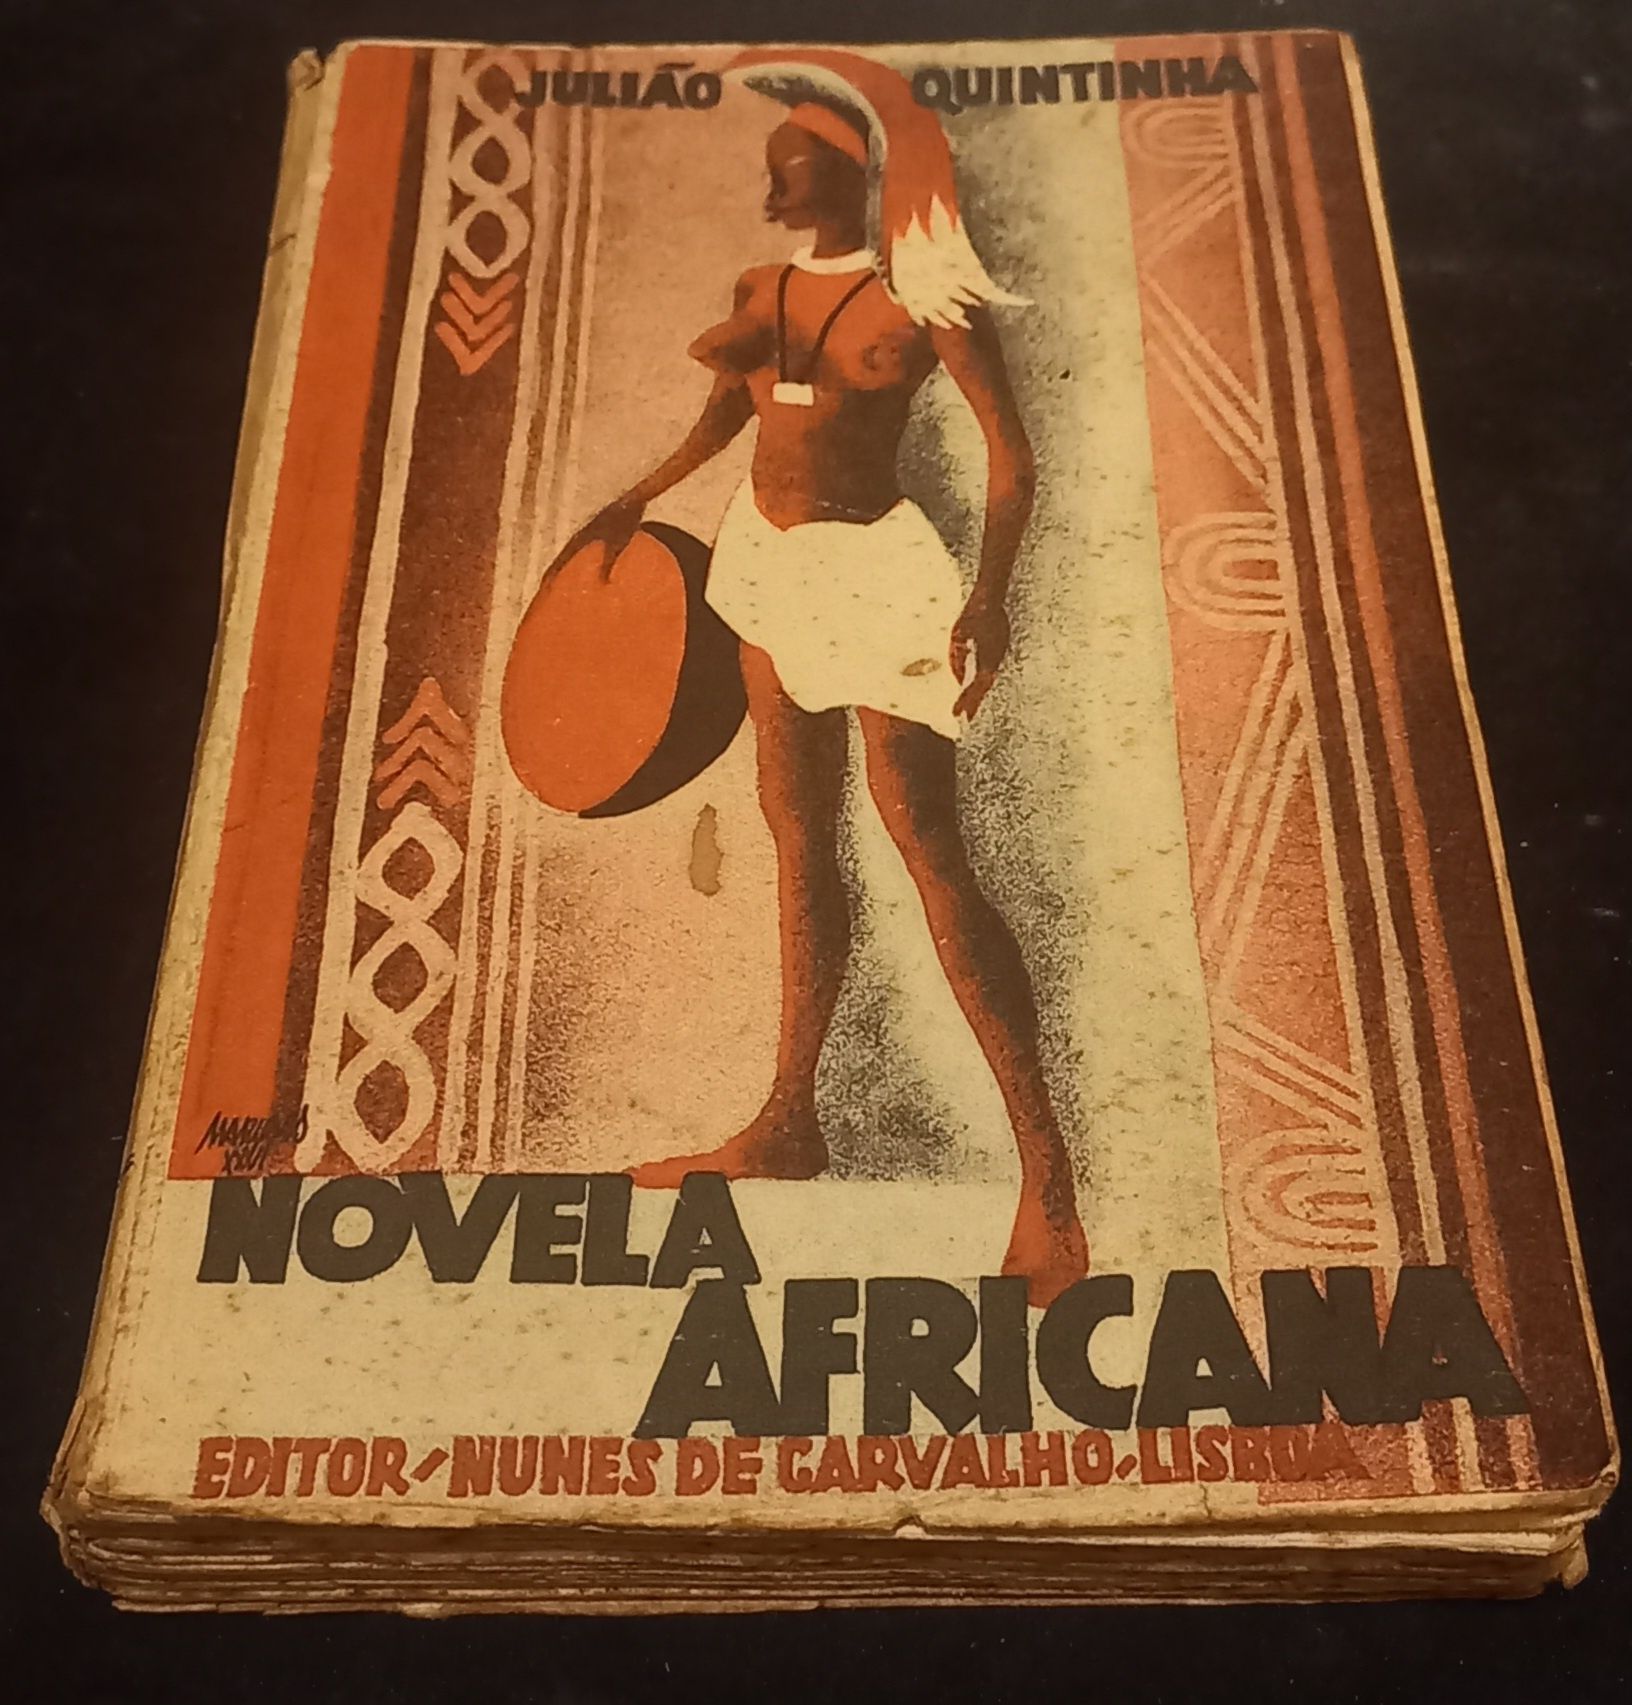 Livro "Novela Africana", Julião Quintinha, 1933.